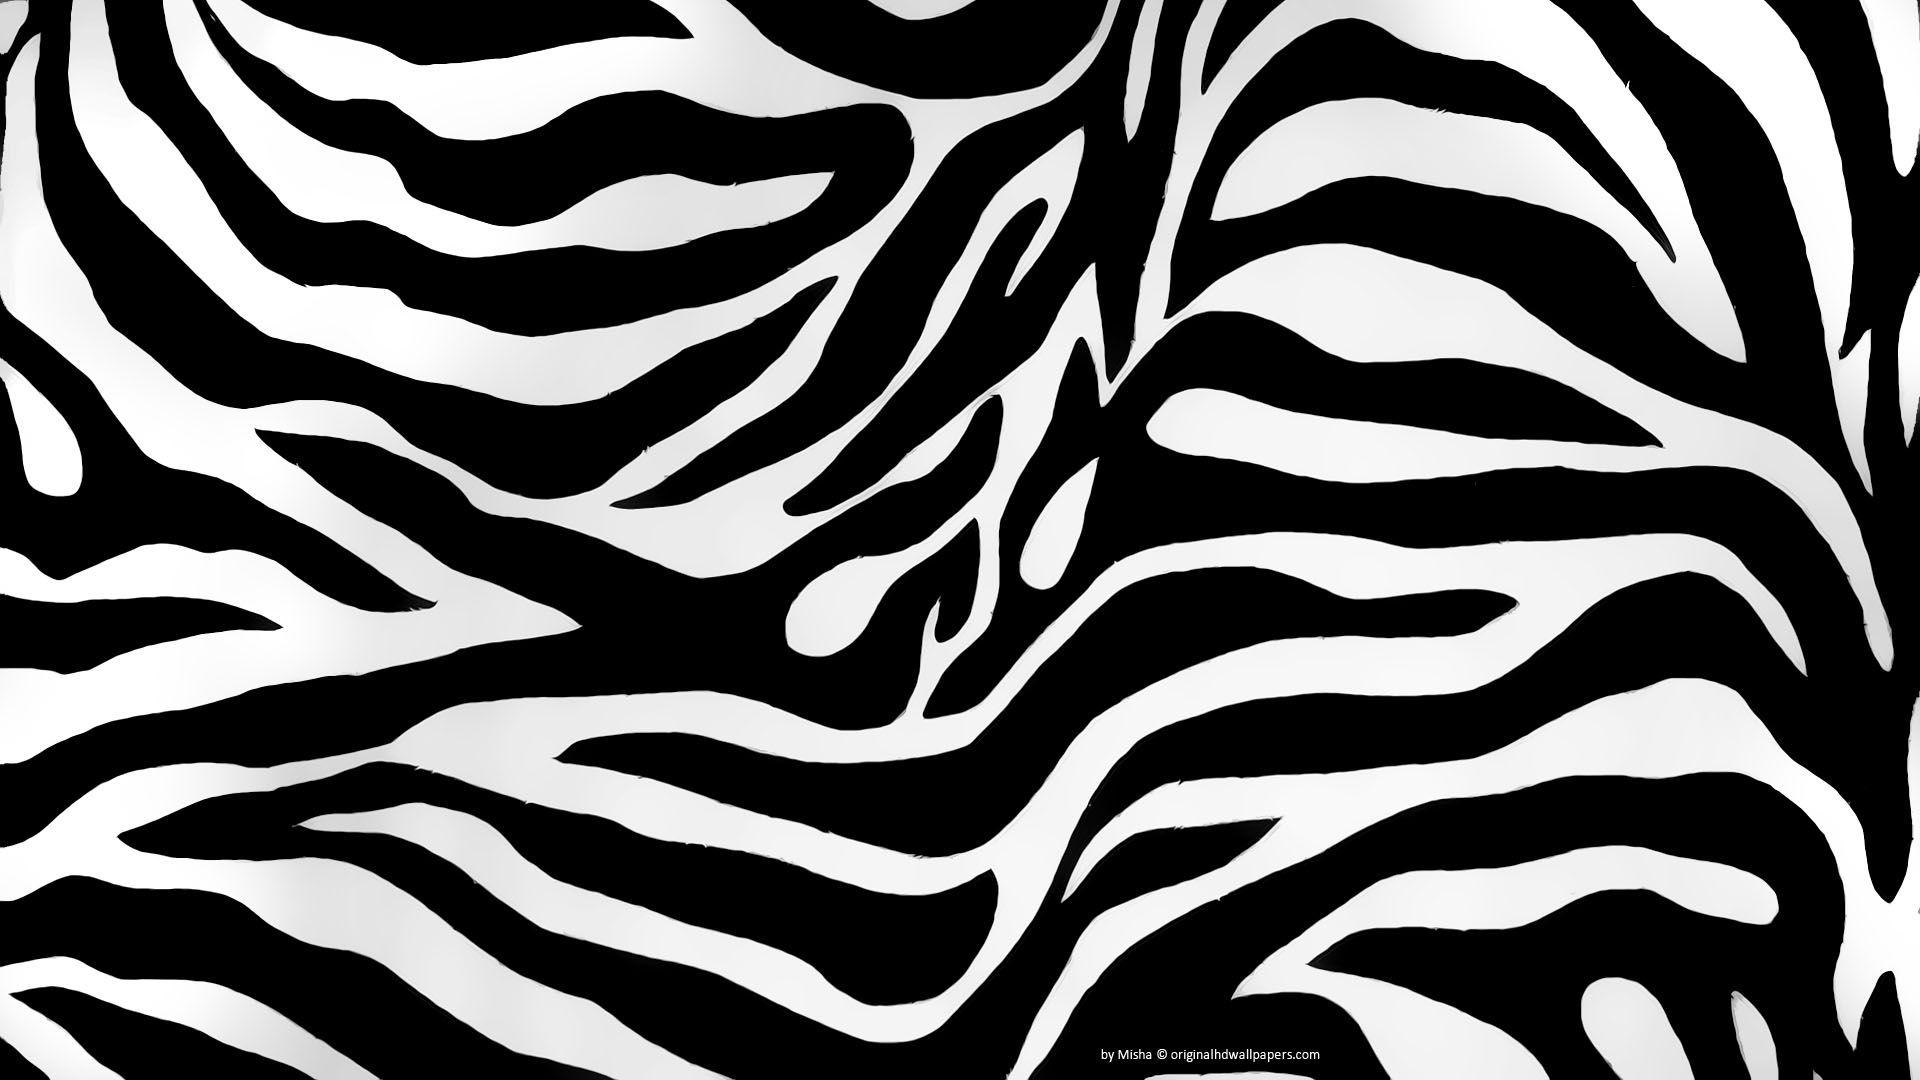 Free Zebra Print Wallpaper Download Free Zebra Print Wallpaper png images  Free ClipArts on Clipart Library